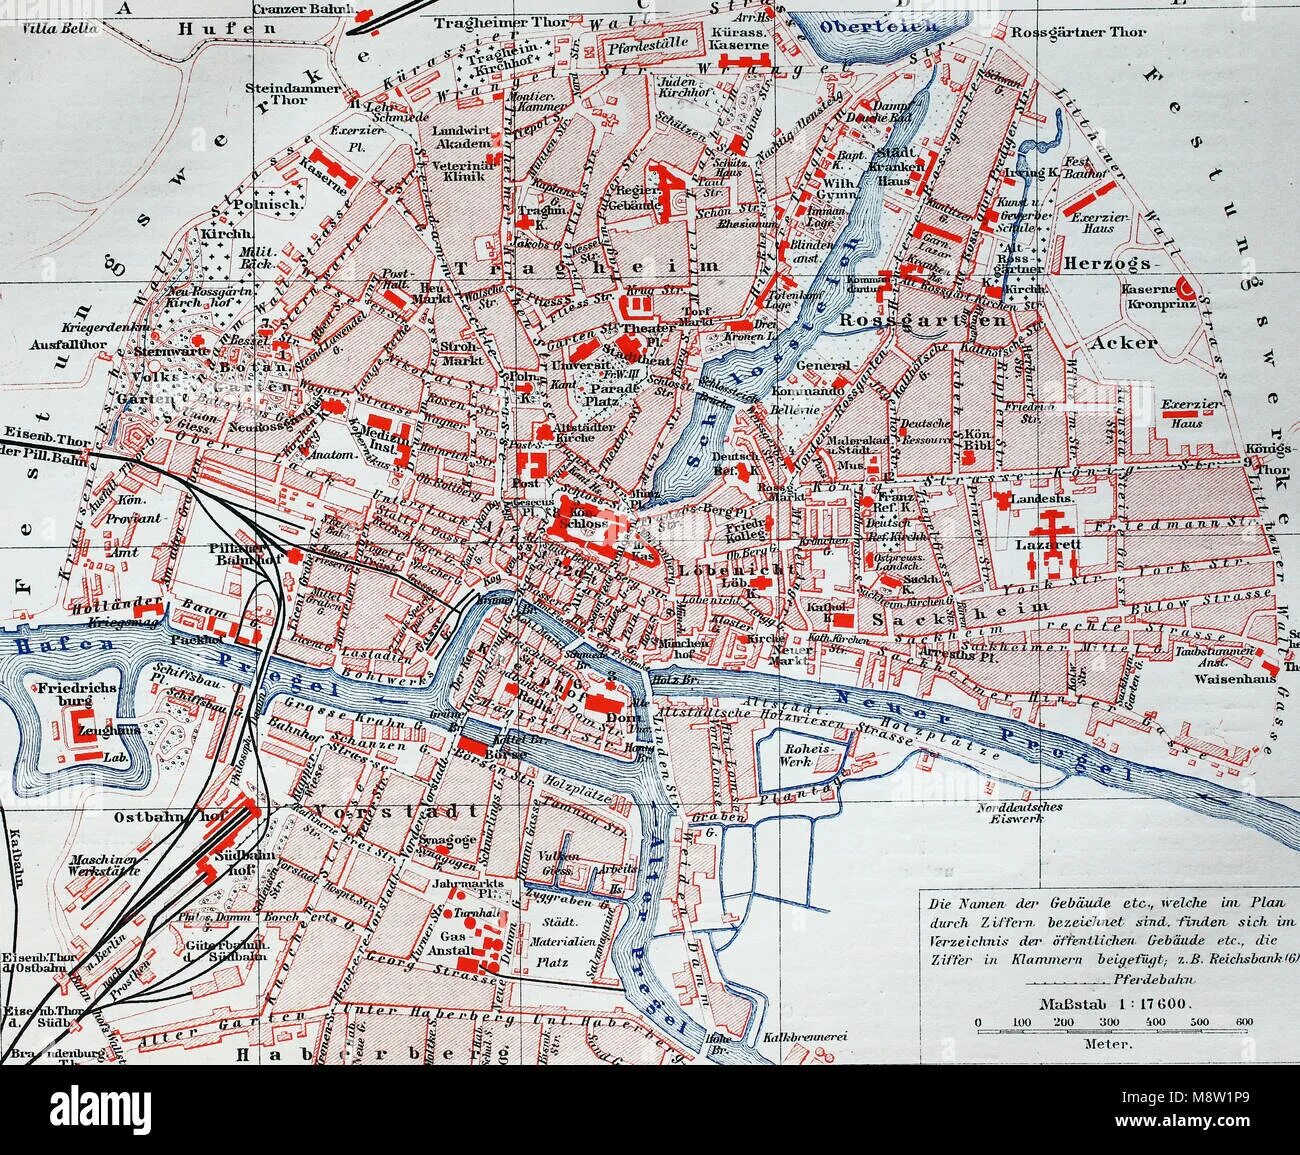 Карта города Кенигсберга 1940. Карта города Кенигсберга 1940 года. Районы Кенигсберга на карте. Кенигсберг город на карте. Подпишите на карте город кенигсберг